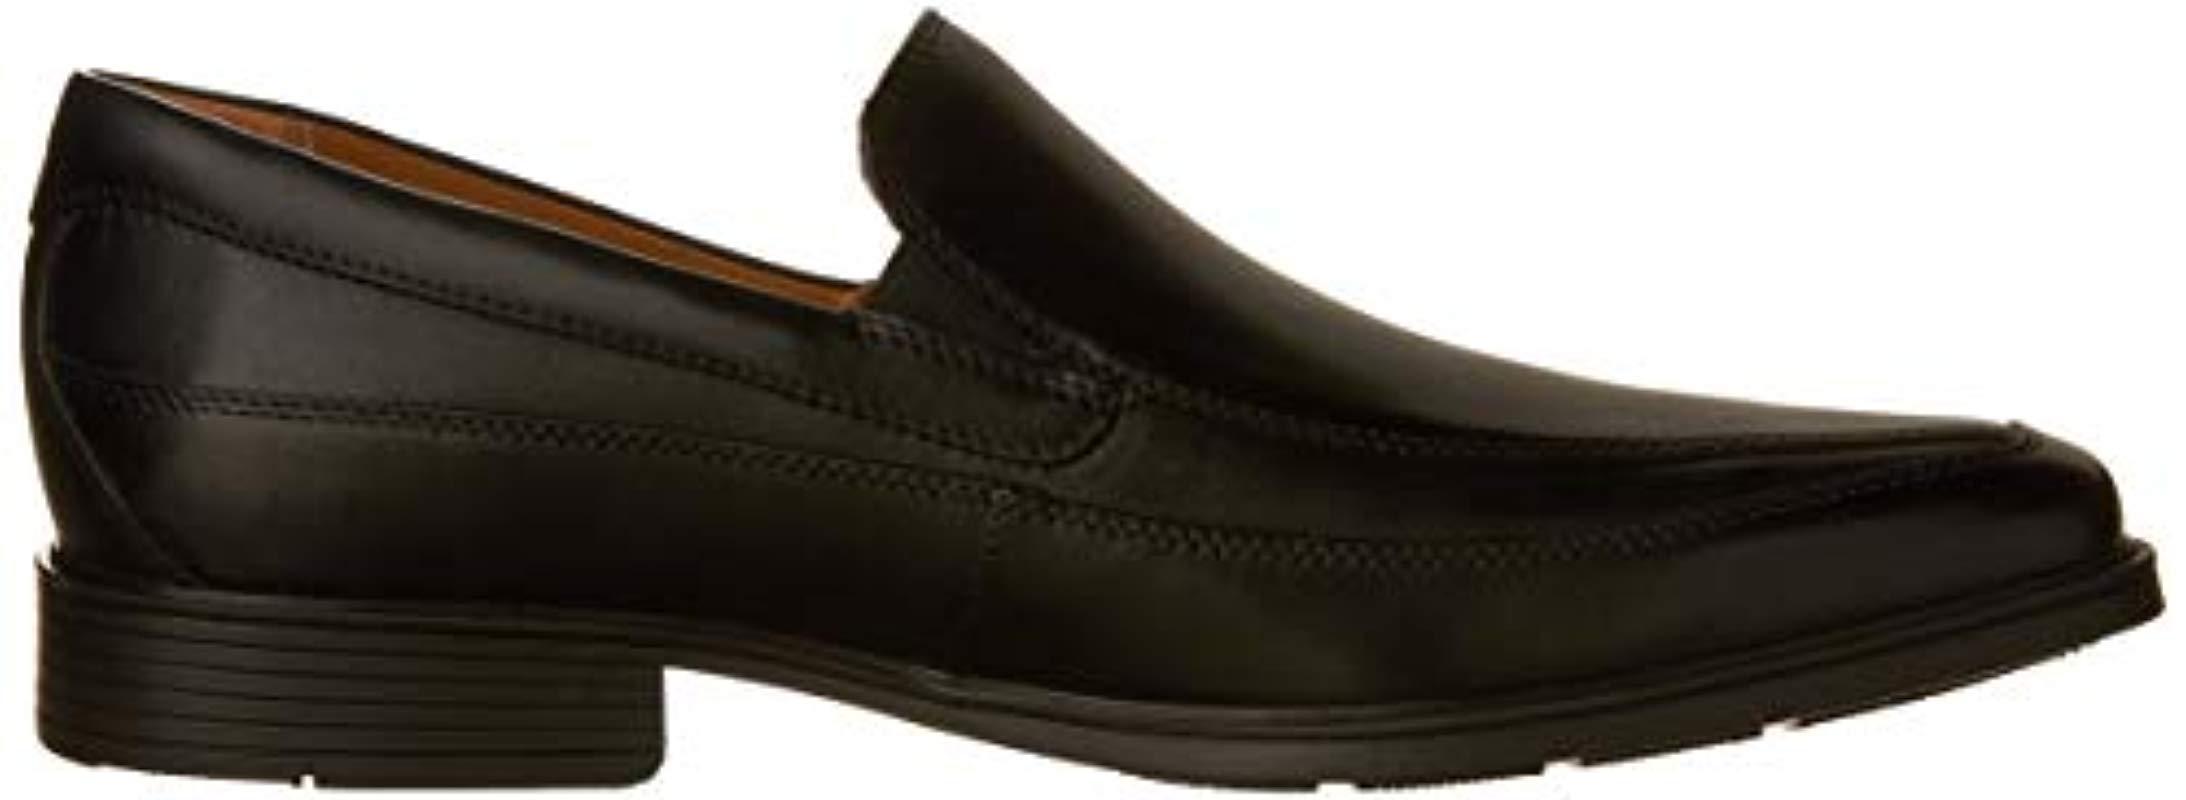 Clarks Leather Tilden Free Slip-on Loafer in Black Leather (Black) for ...